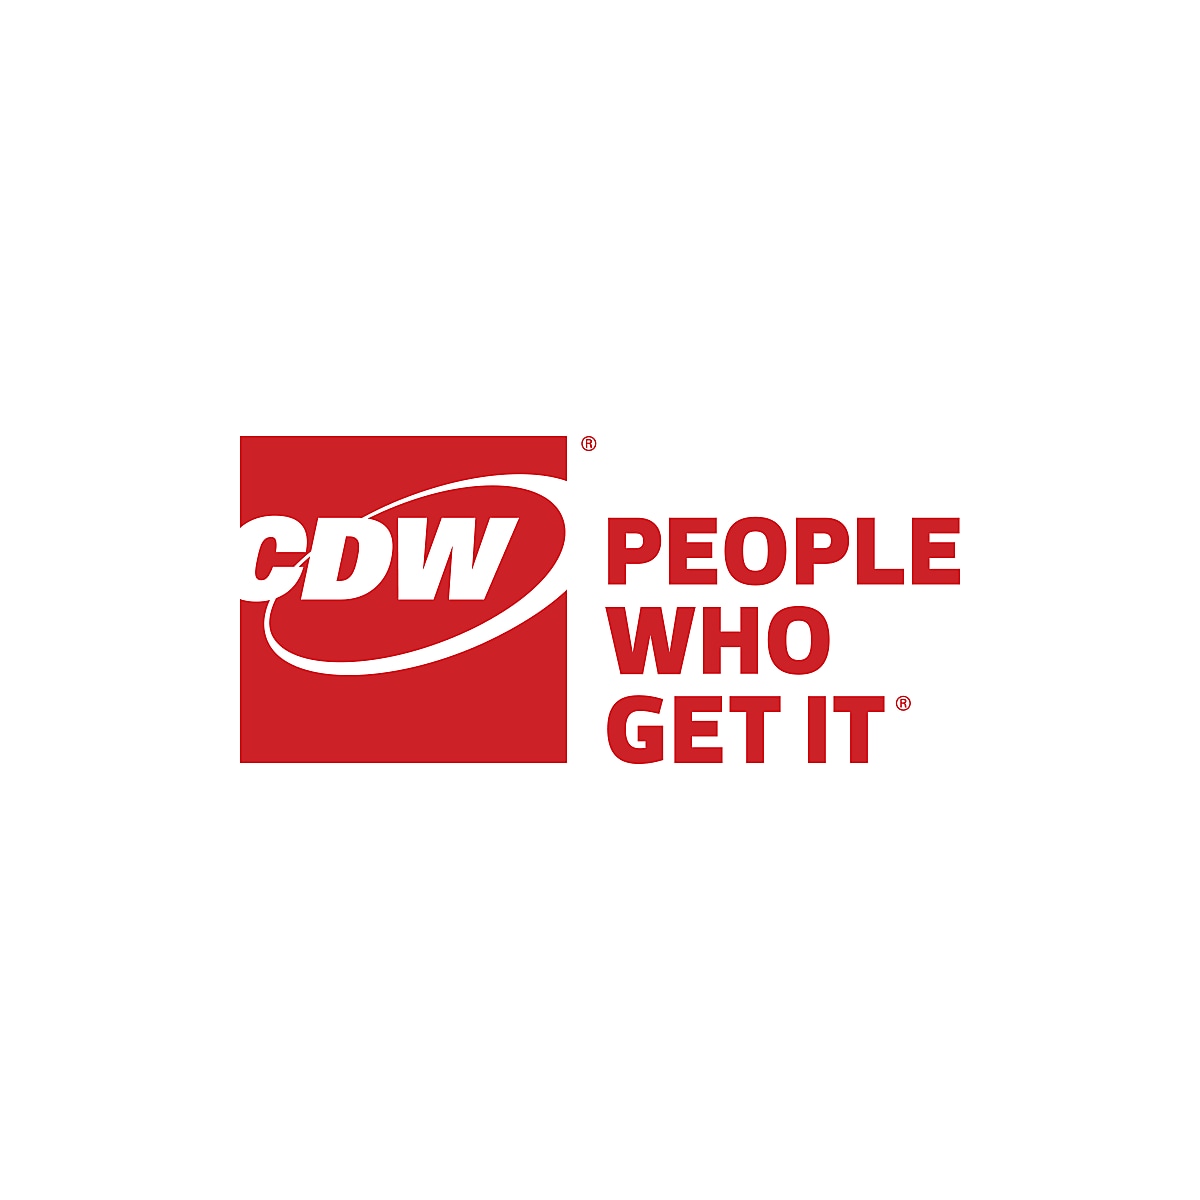 www.cdw.com